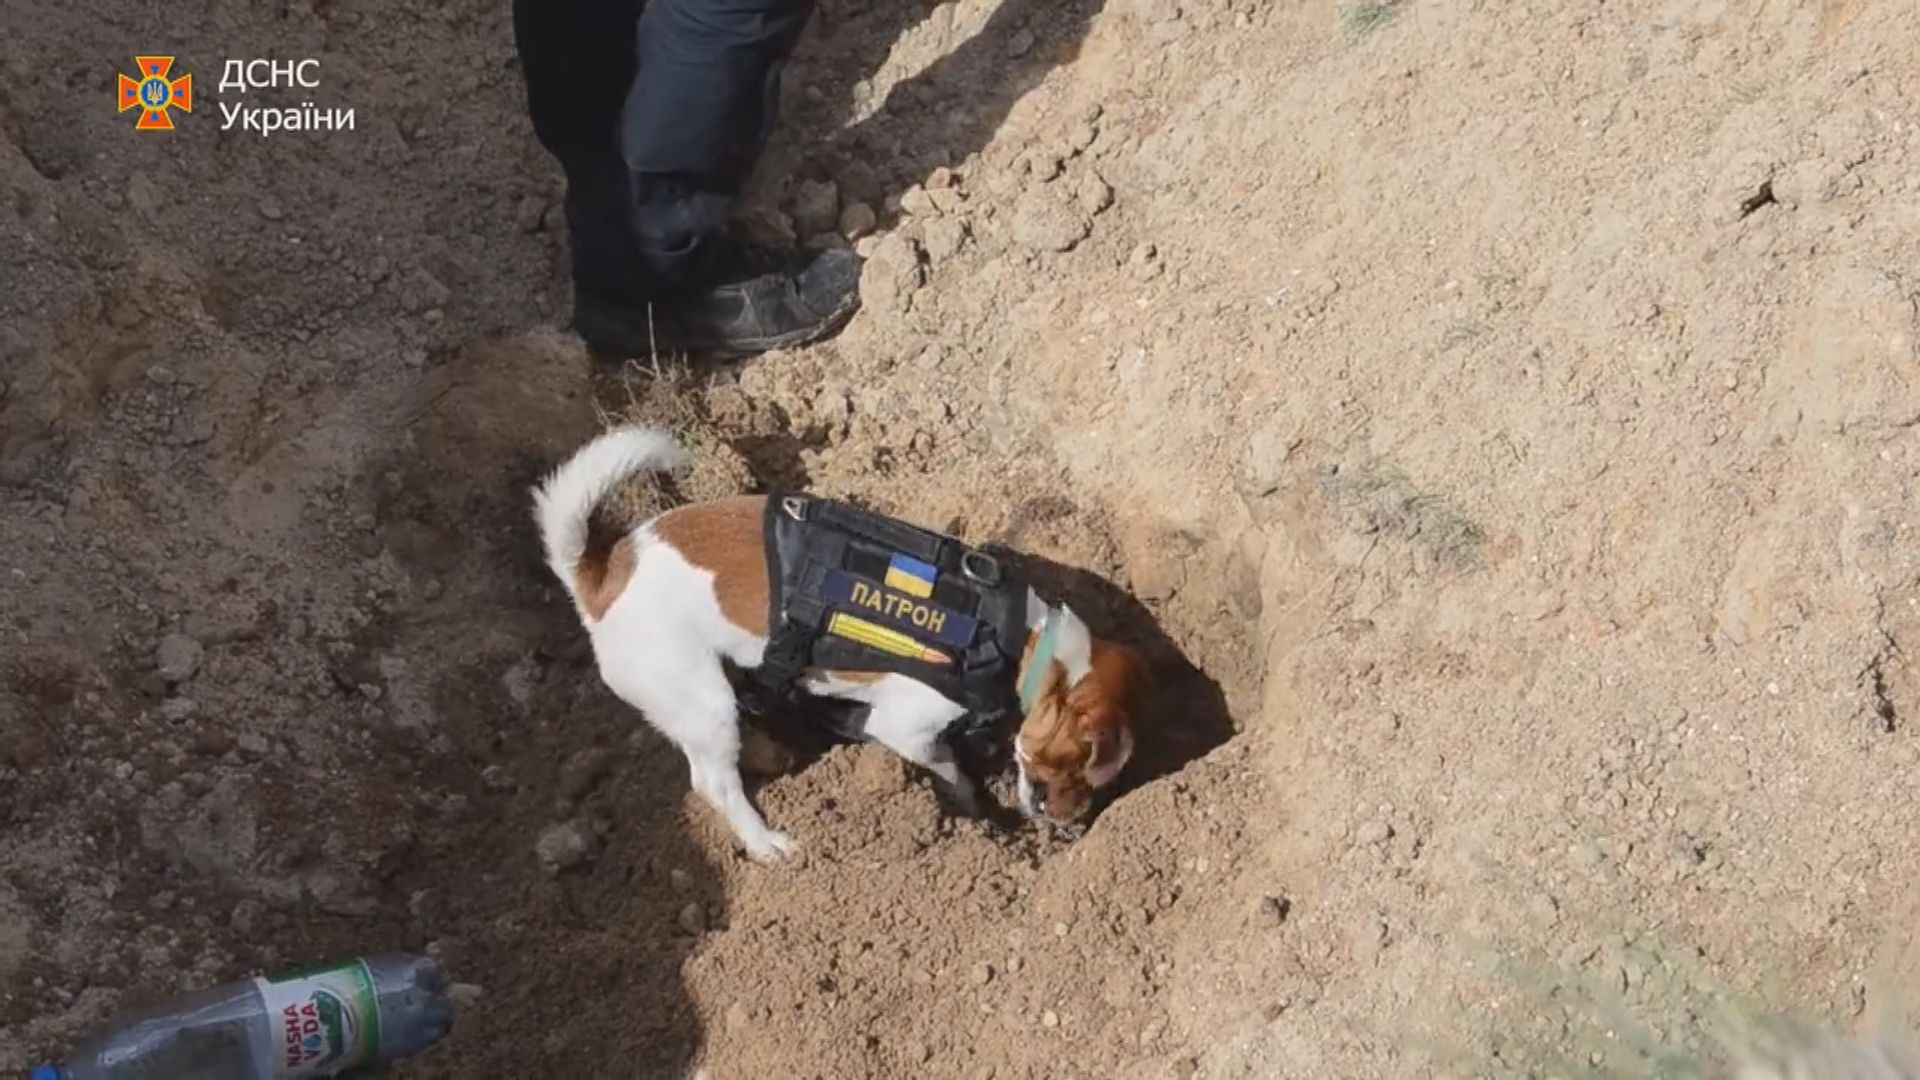 【環球薈報】烏克蘭掃雷犬發現逾二百炸彈獲嘉許